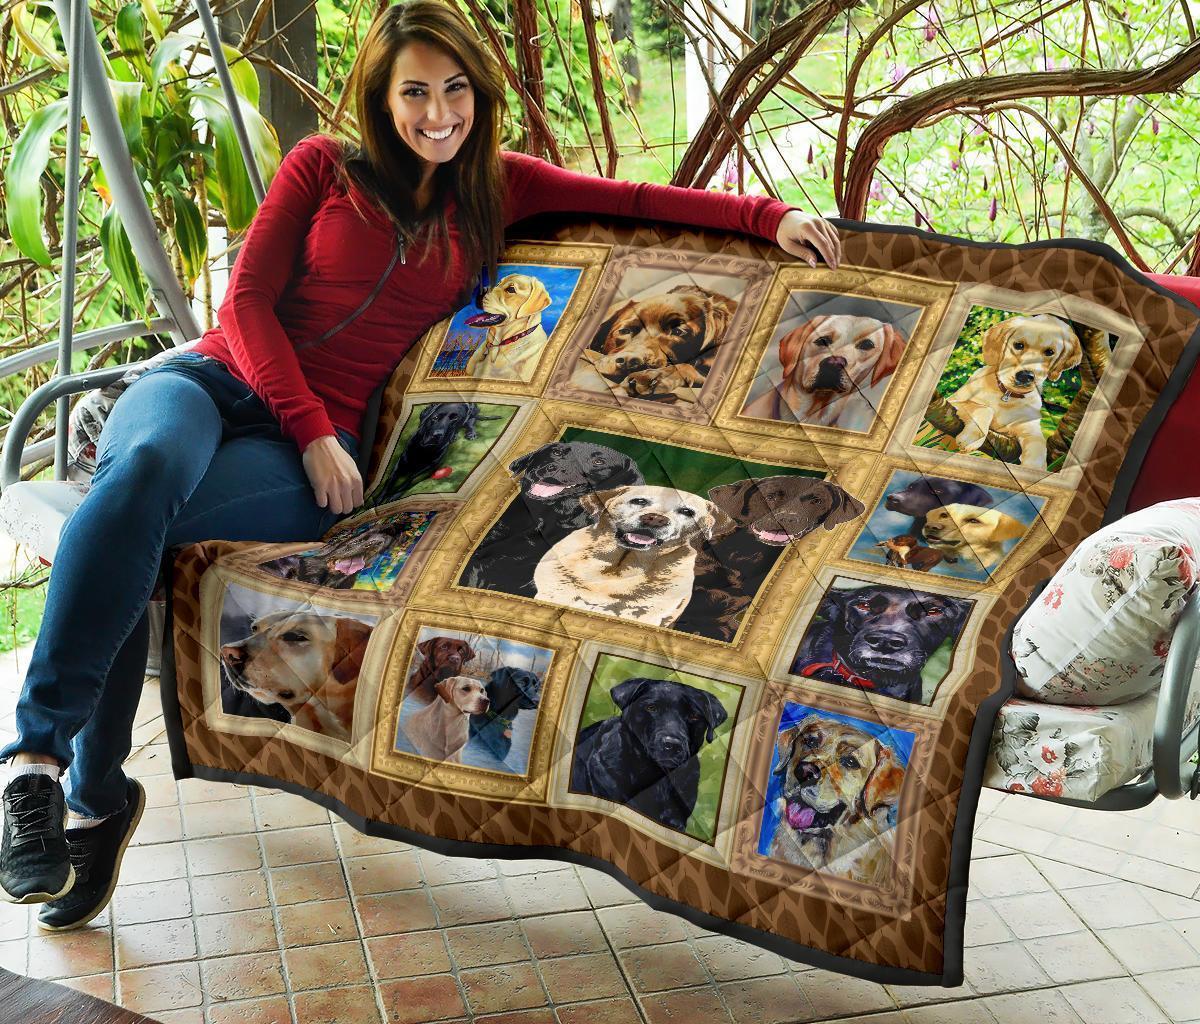 Labrador Dog Quilt Blanket Funny Blanket Dog-Gear Wanta